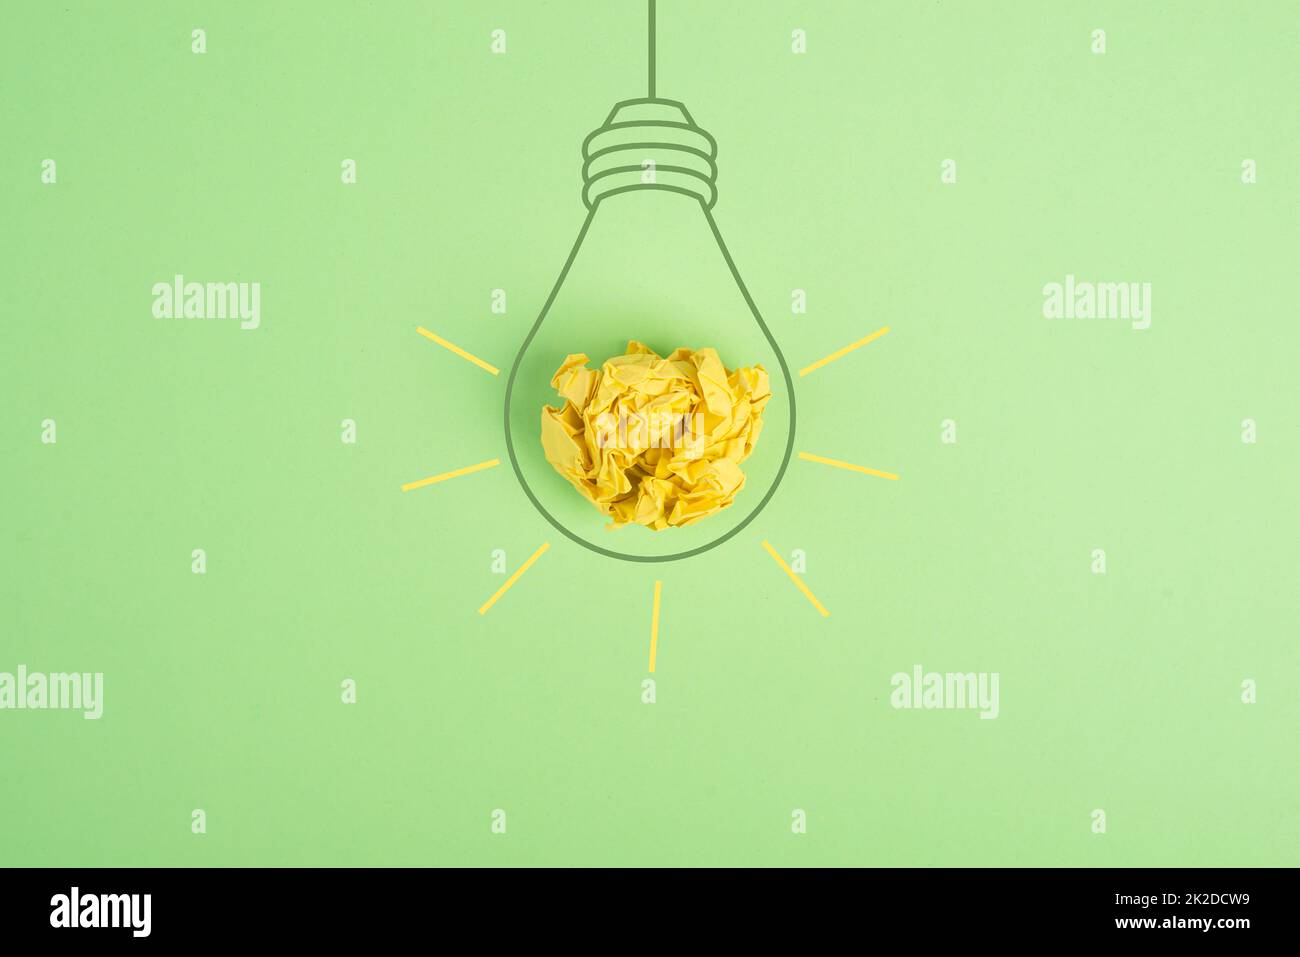 Concept d'ampoule, ayant une nouvelle idée, brainstorming, start up business, marketing créatif, couleur verte et jaune Banque D'Images